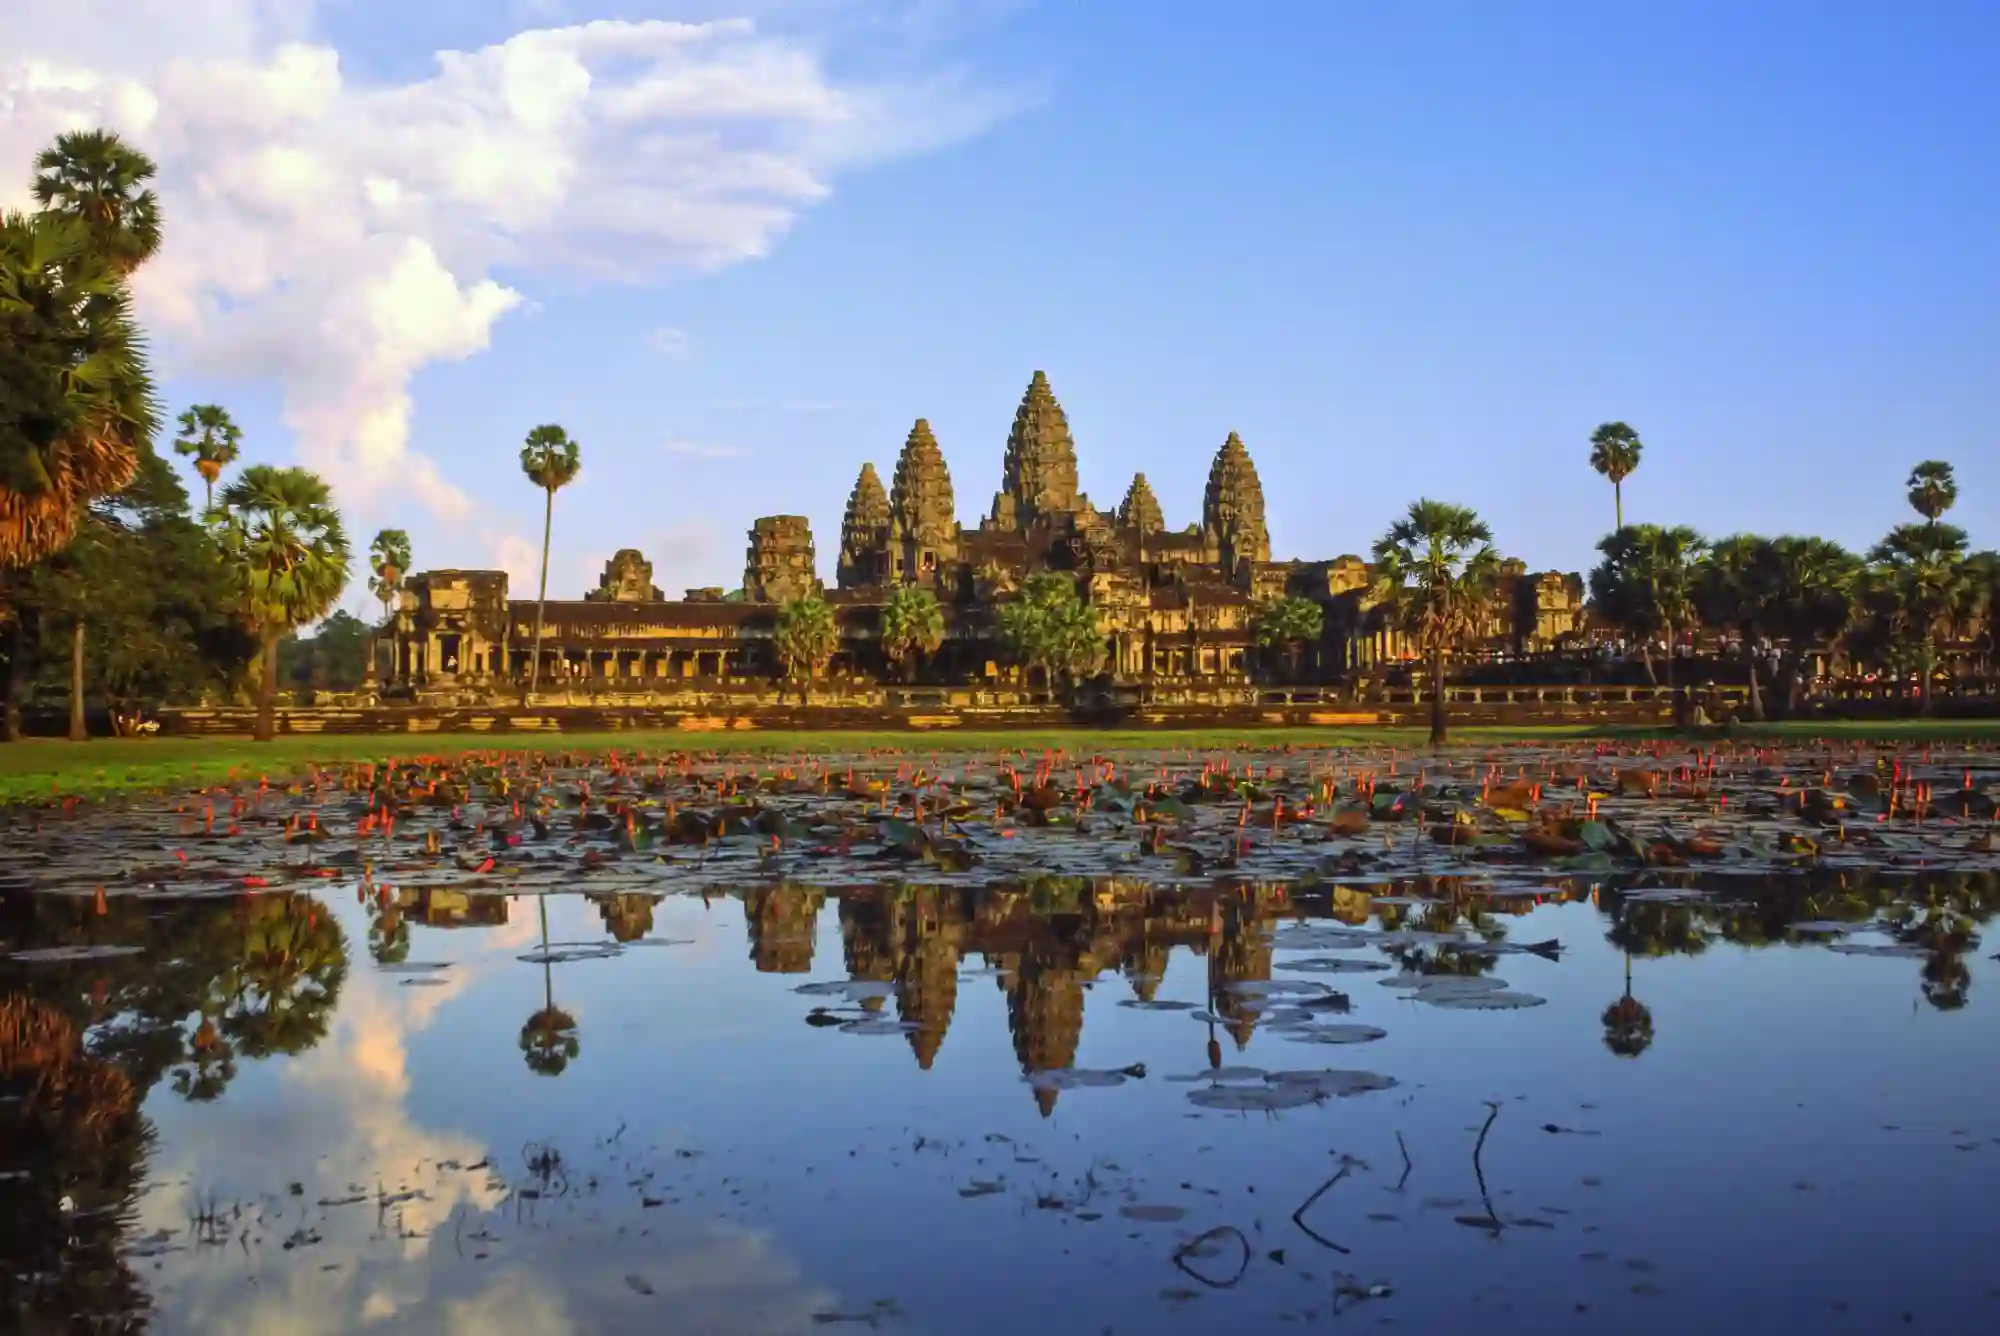 Portkortbillede fra Angkor Wat, Siem Reap, Cambodia